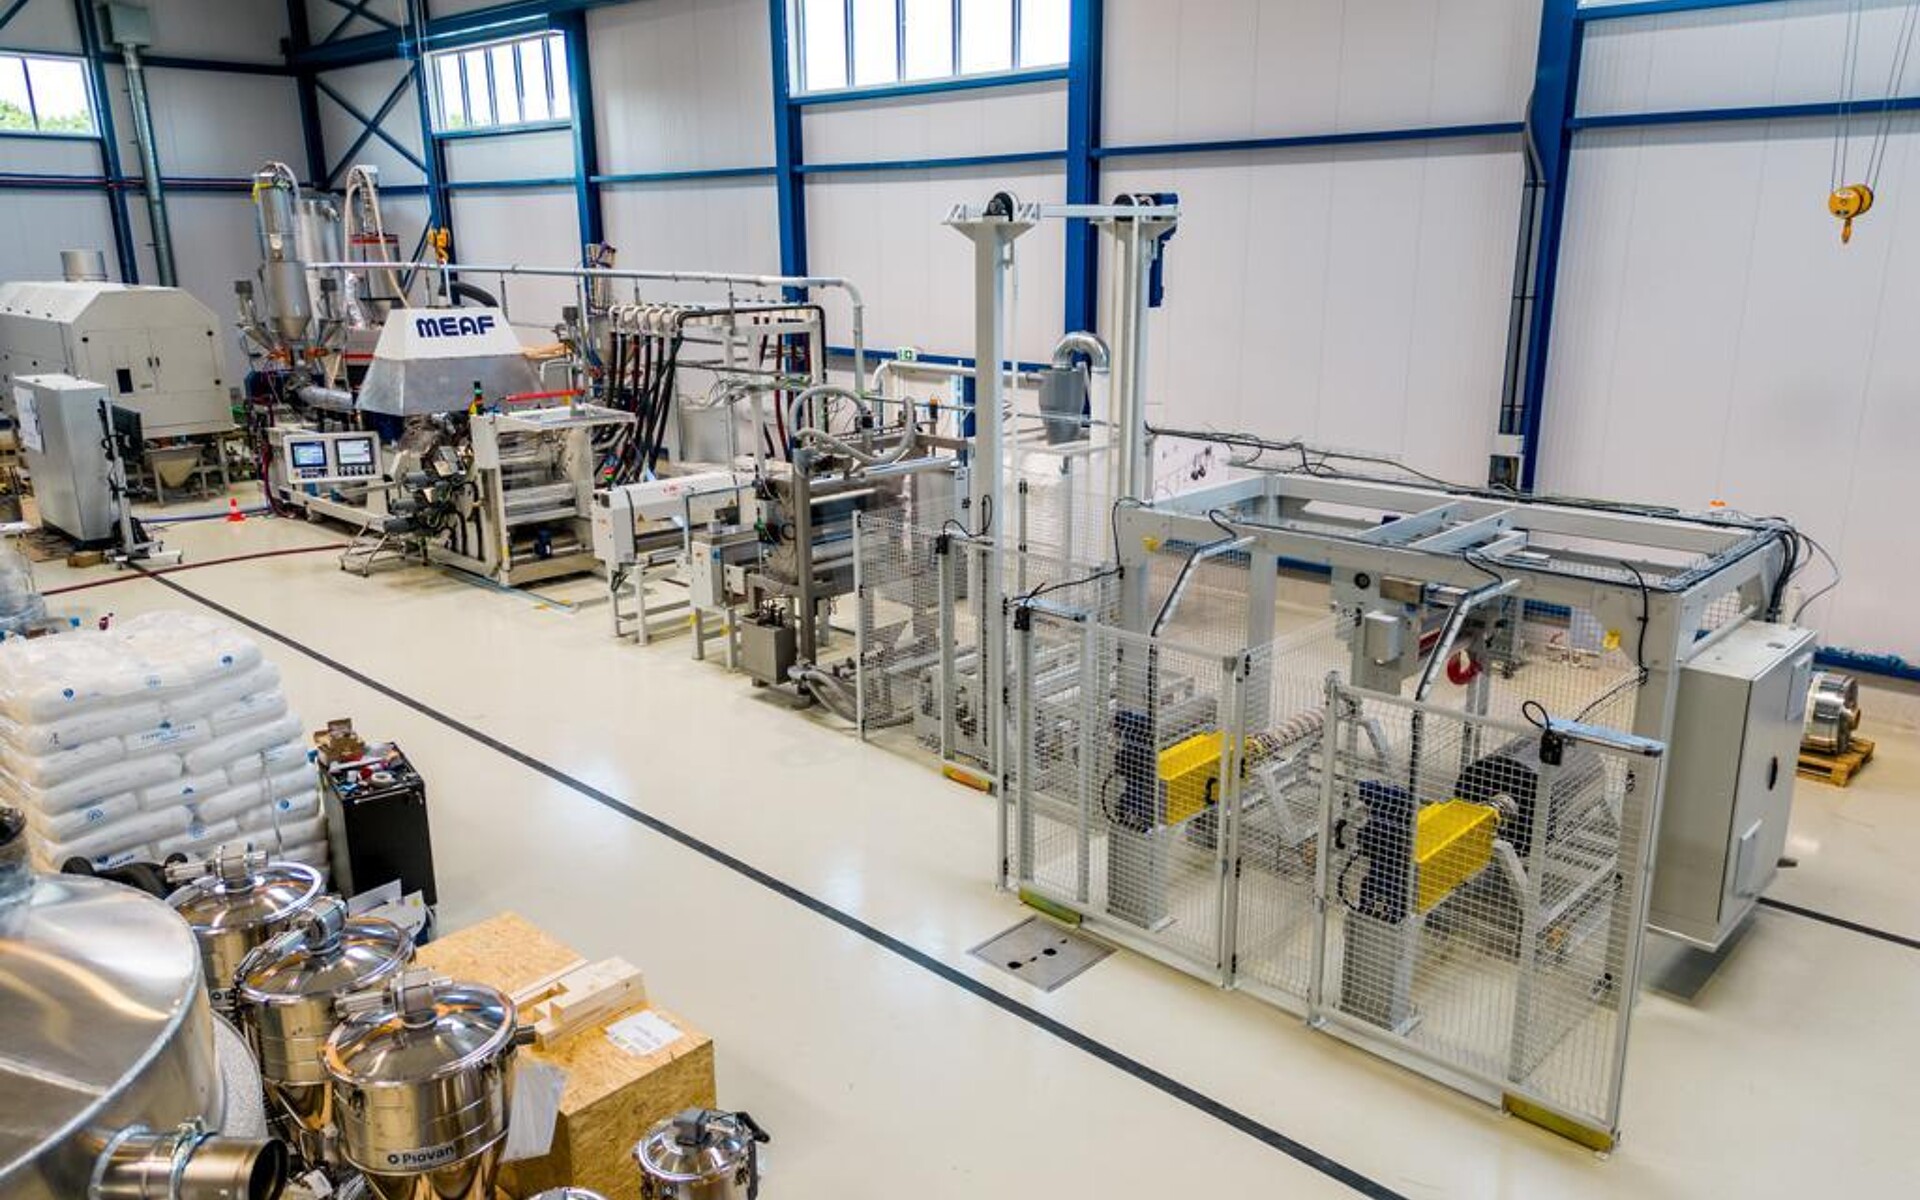 Eine erste R-PET-Extrusionslinie für die Herstellung von Fleischverpackungen wurde bei Pack Klaipeda installiert. (Quelle: MEAF)